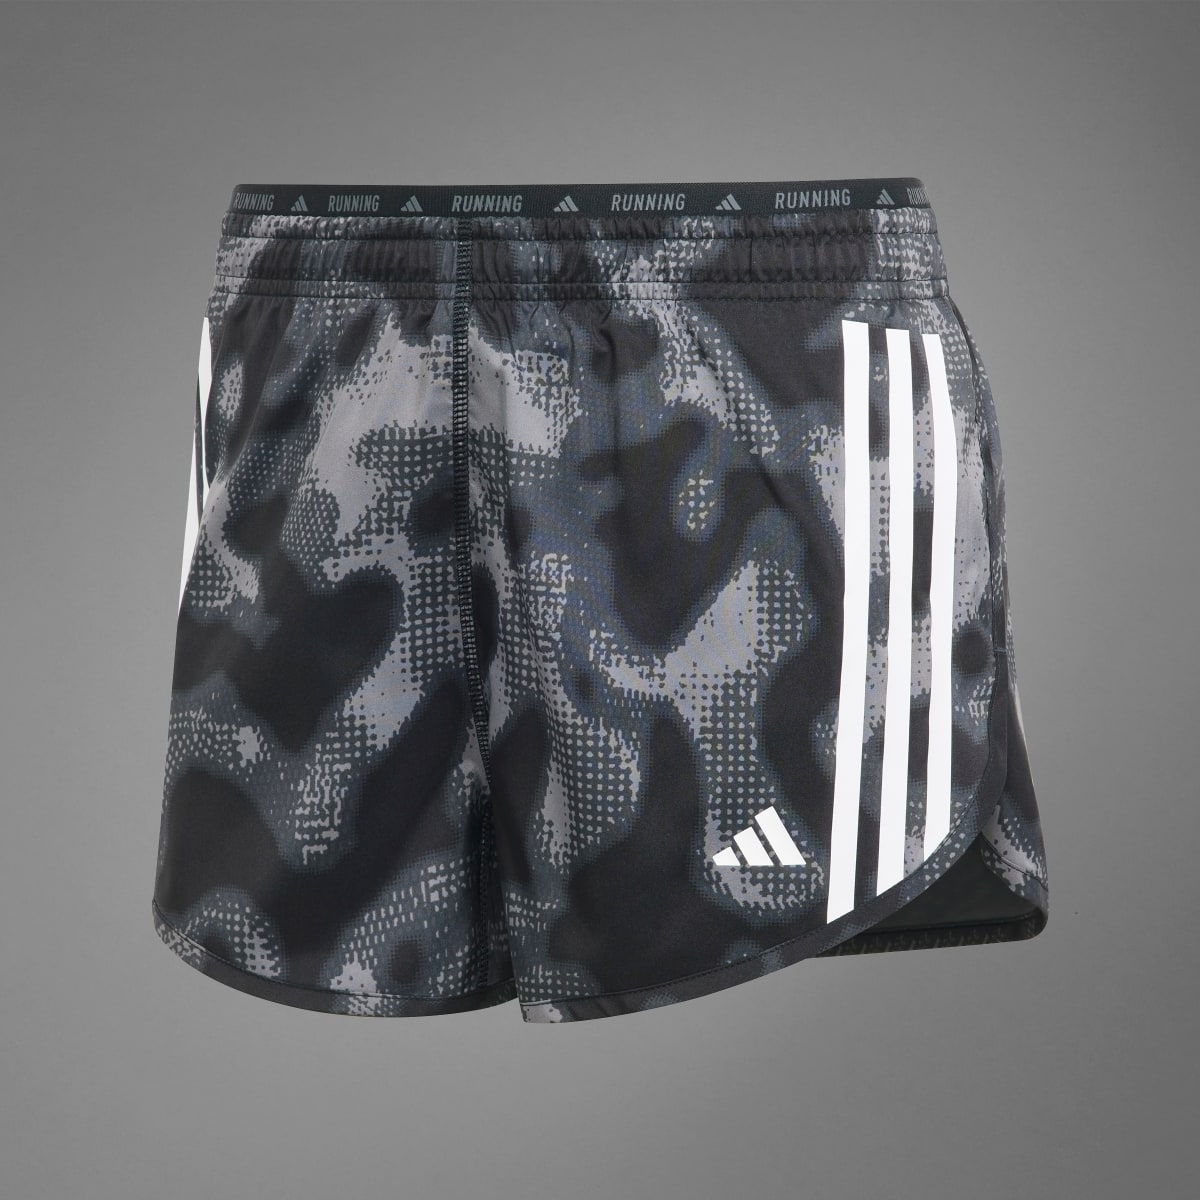 Adidas Own the Run 3-Stripes Allover Print Shorts. 9